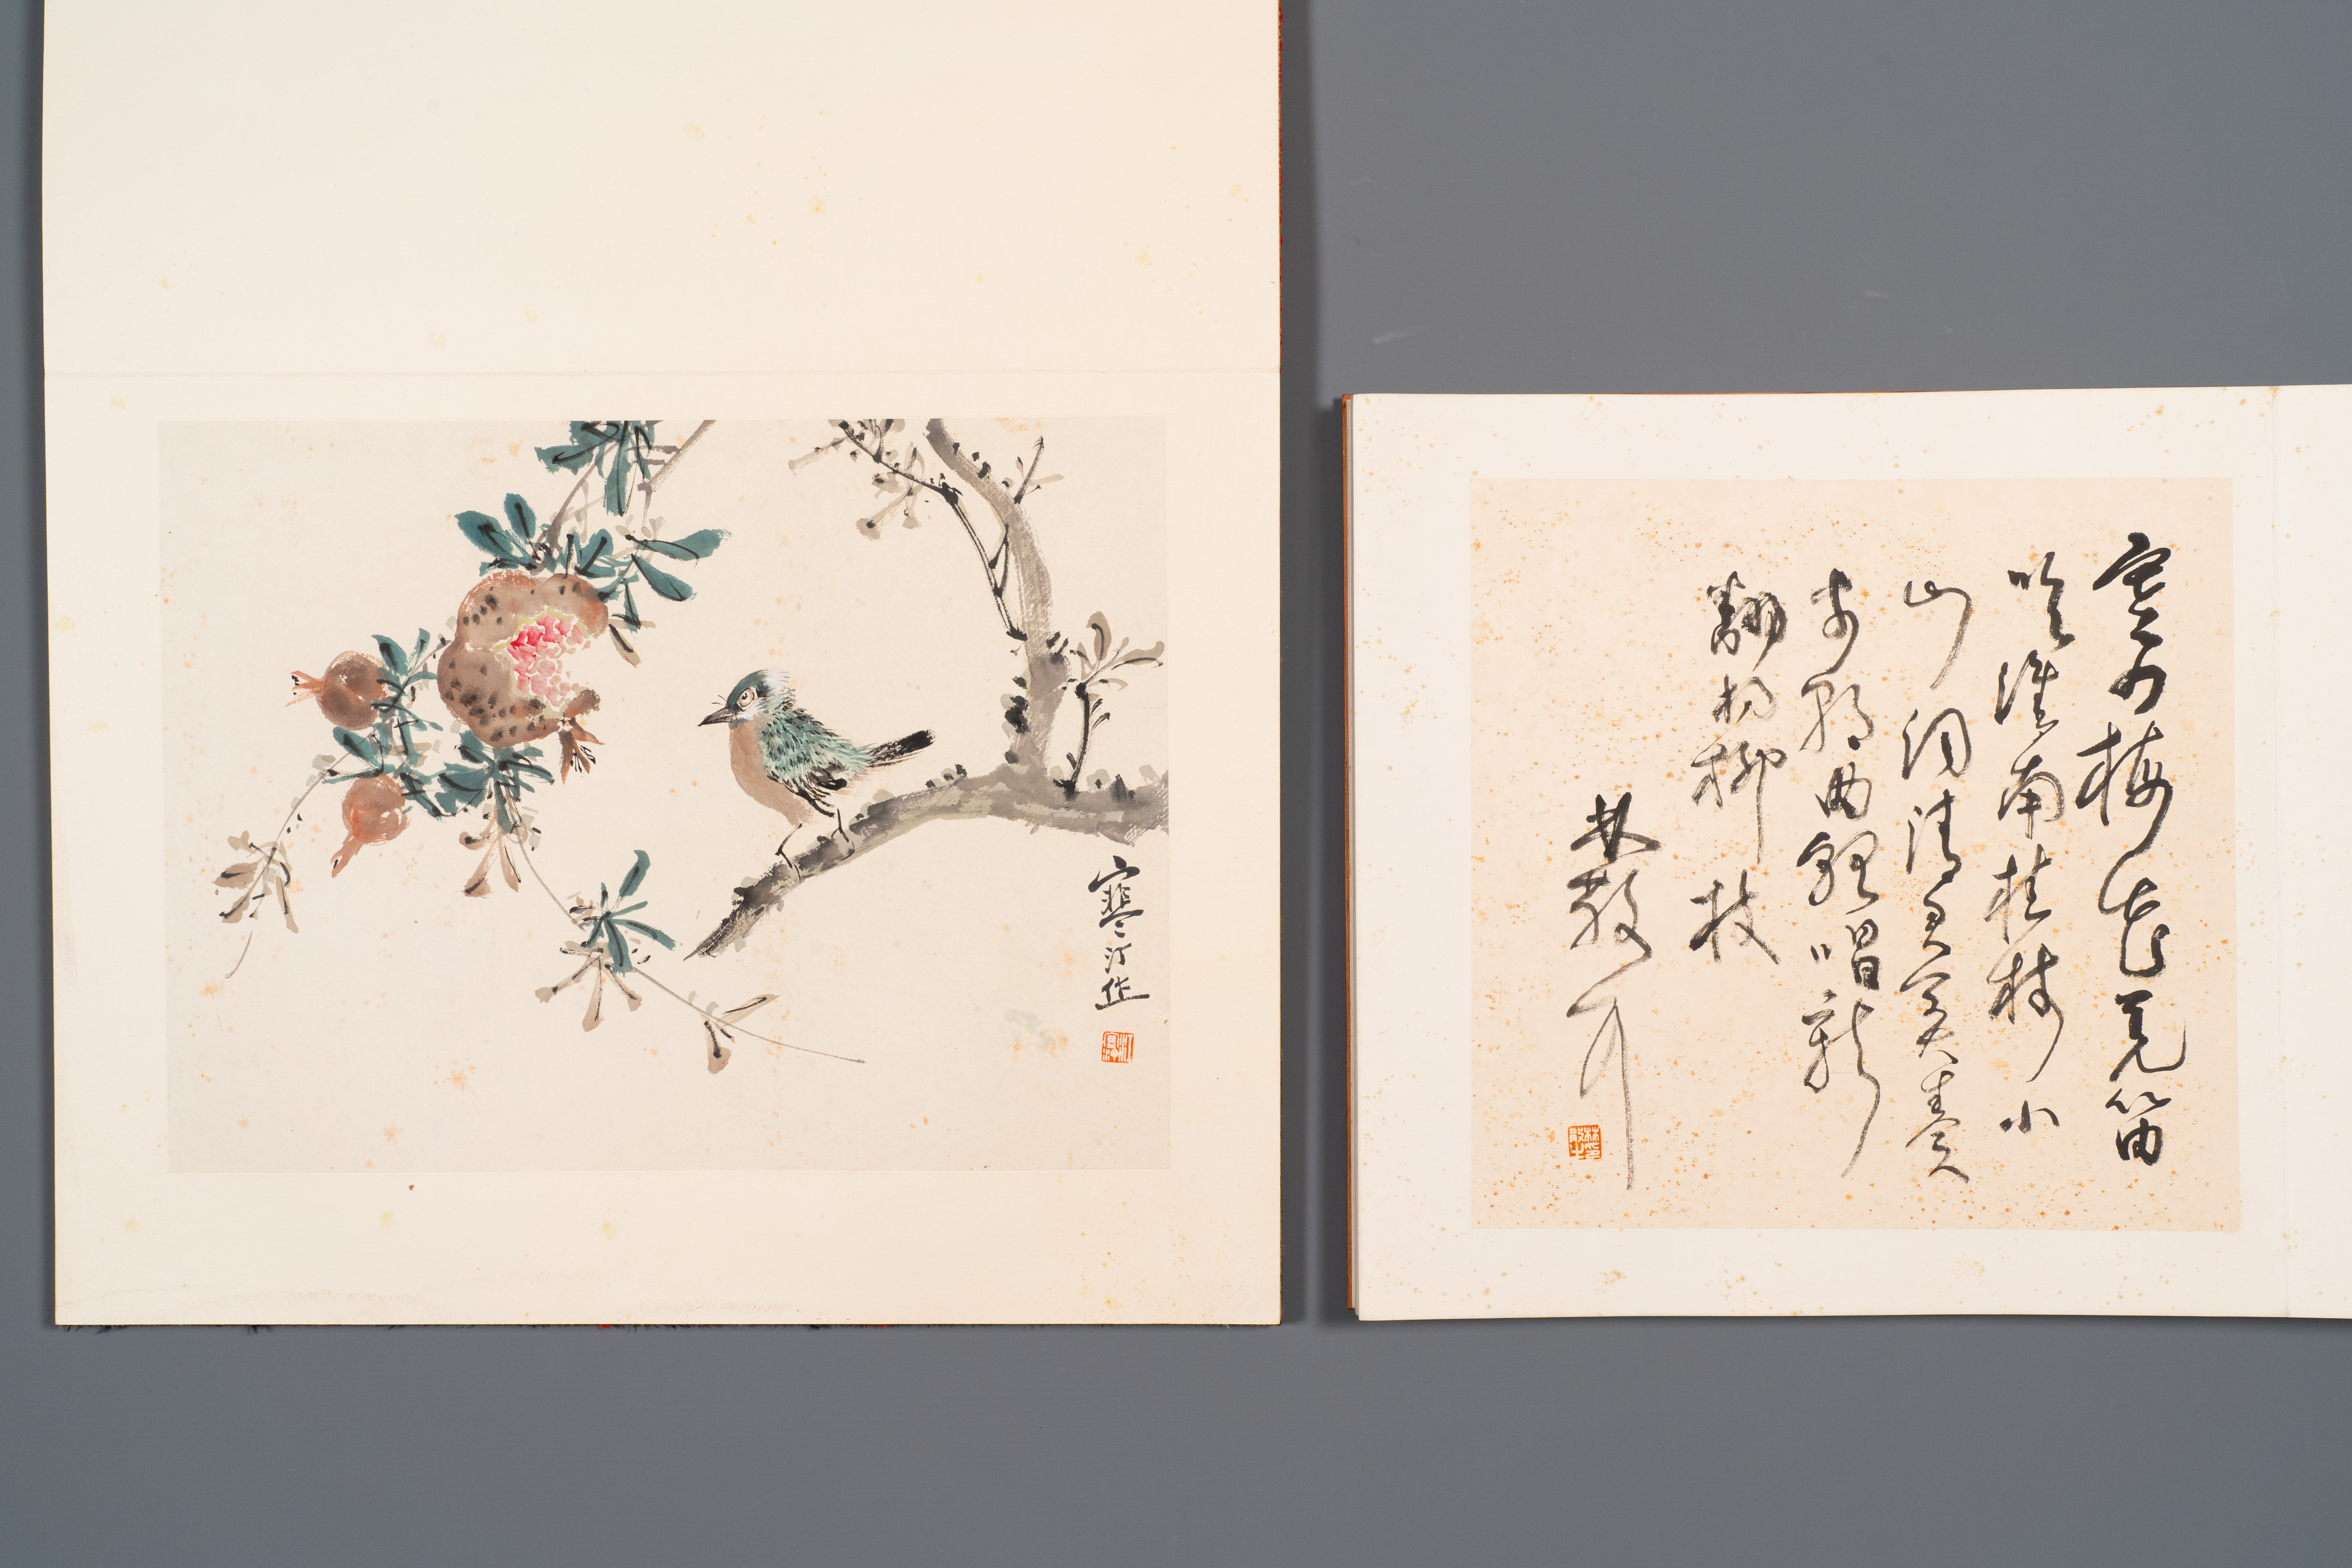 Three albums: 'Jiang Hanting æ±Ÿå¯’æ±€ (1904-1963), Lin Sanzhi æž—æ•£ä¹‹ (1898-1989) and Qi Gong å¯ - Image 8 of 23